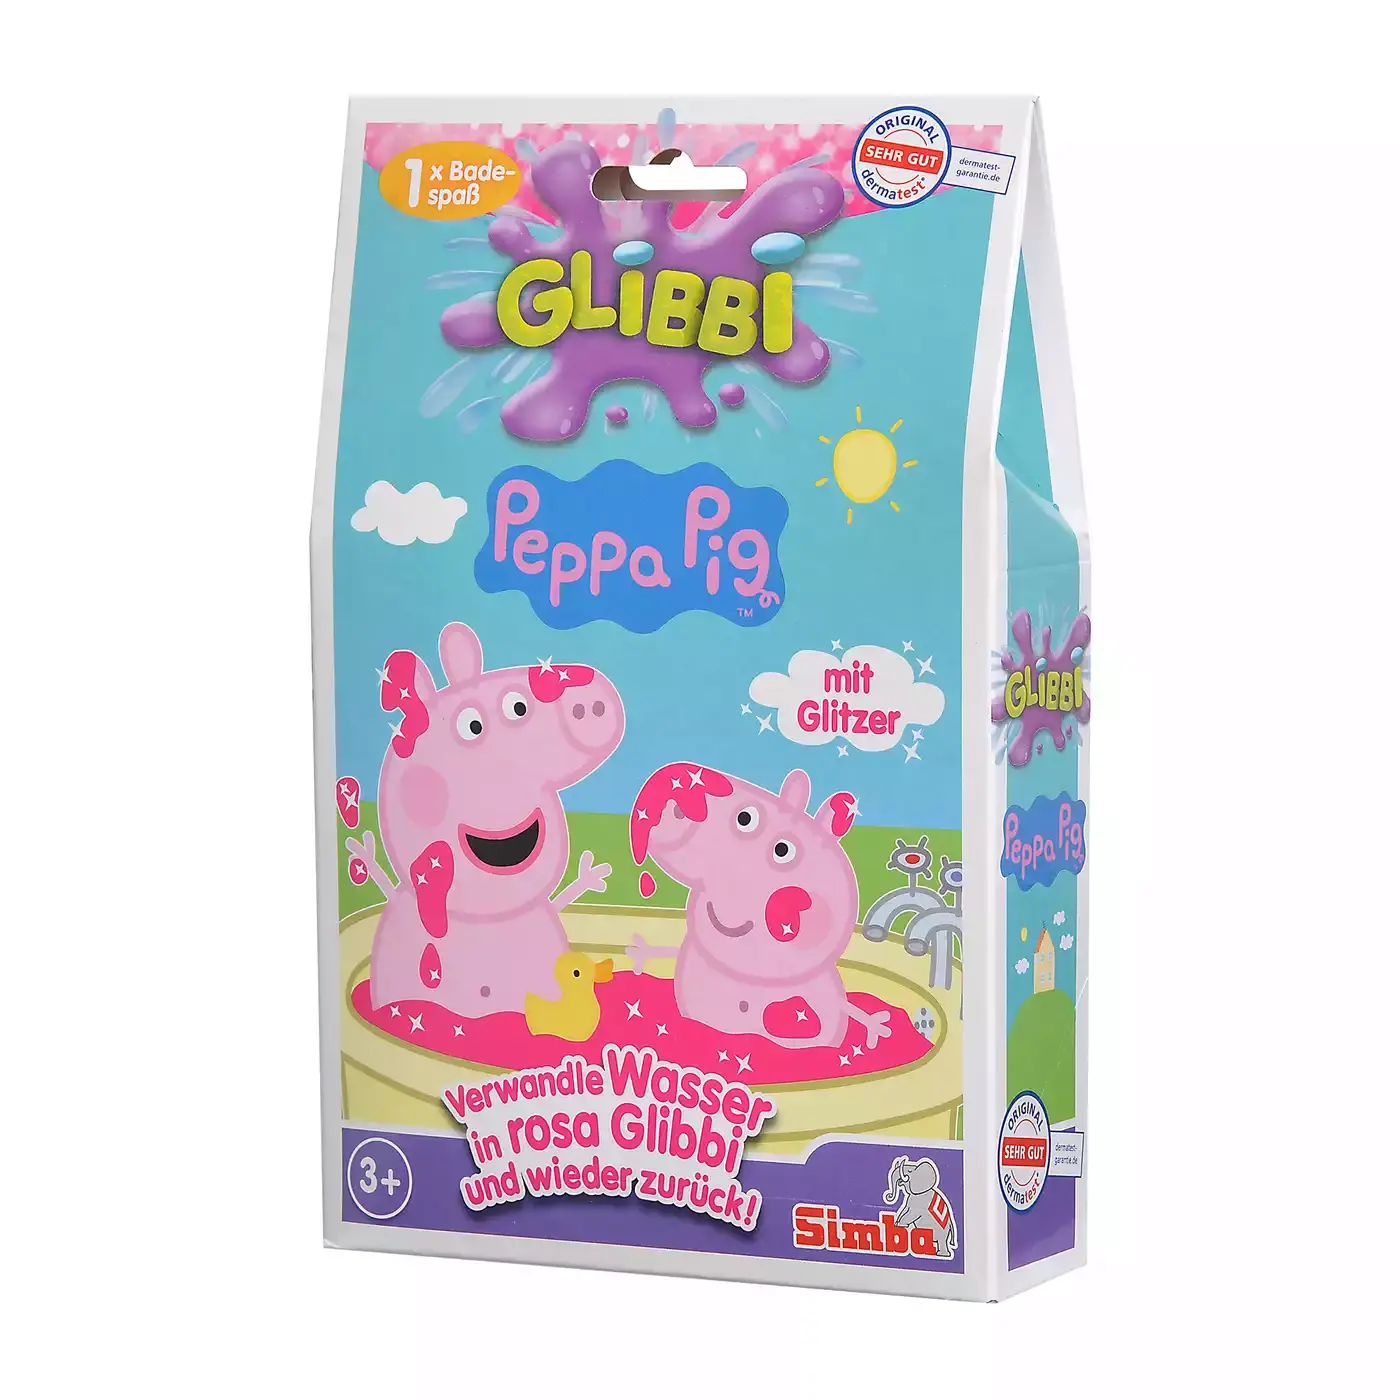 Glibbi Peppa Pig Simba 2000577395705 1